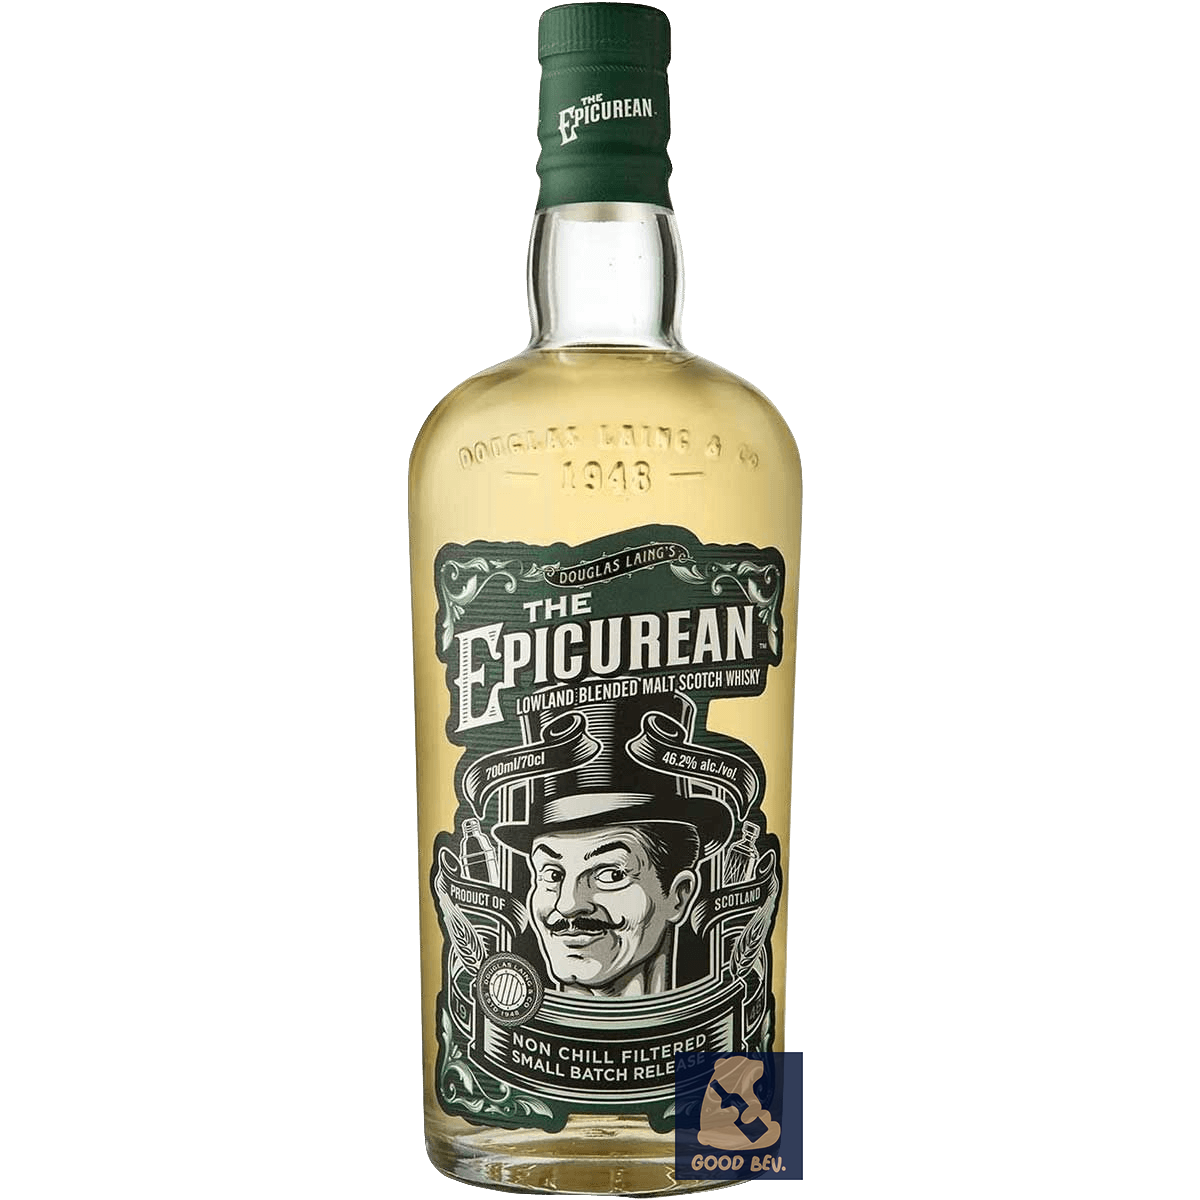 The Epicurean Lowland Malt Scotch Whisky 46.2% ABV 70 cl